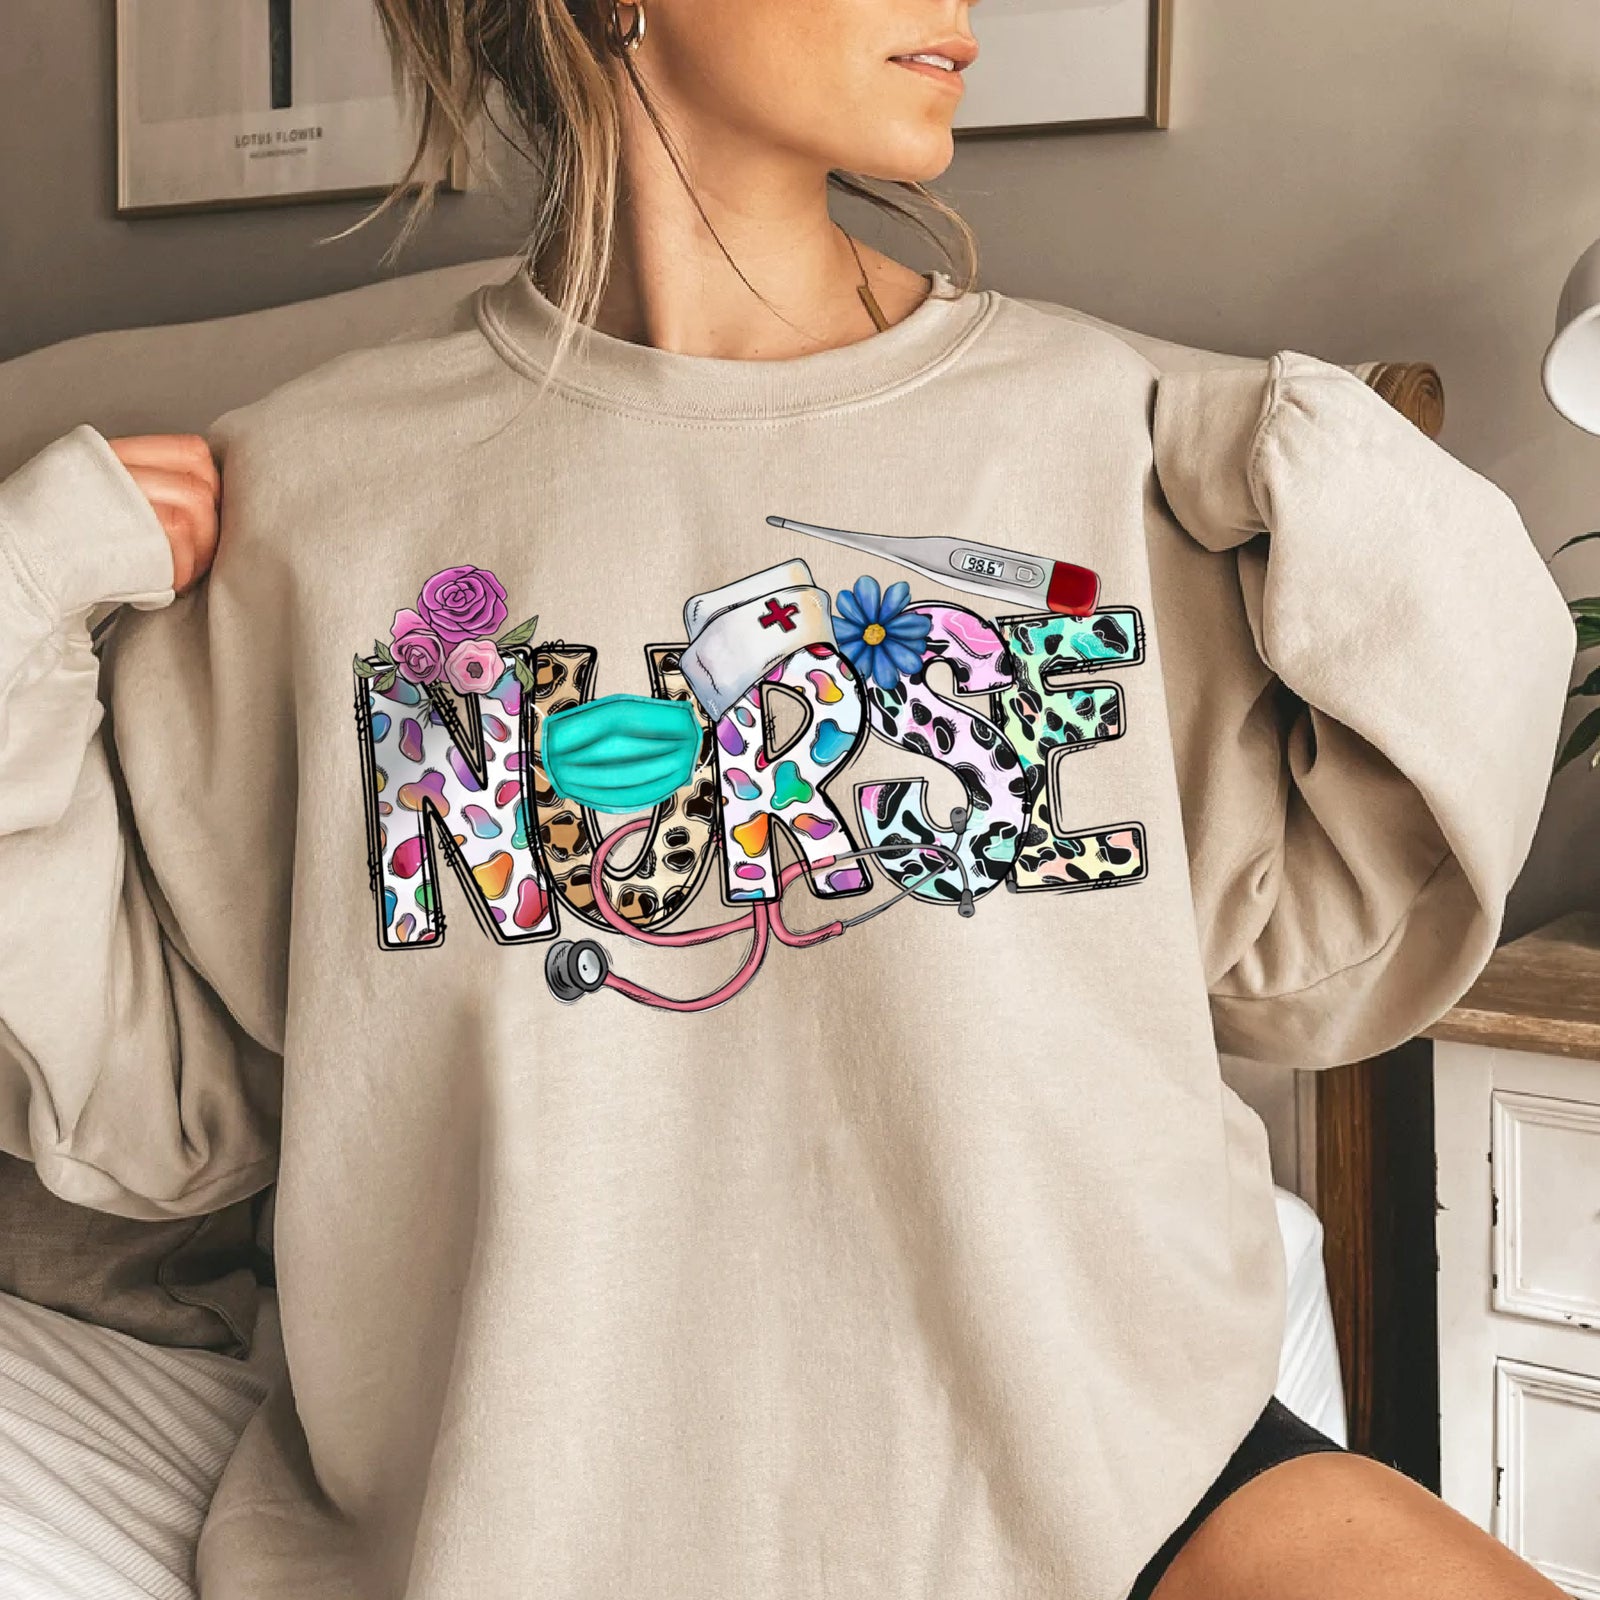 Registered Nurse Sweatshirt, Leopard Print Nurse Sweatshirt